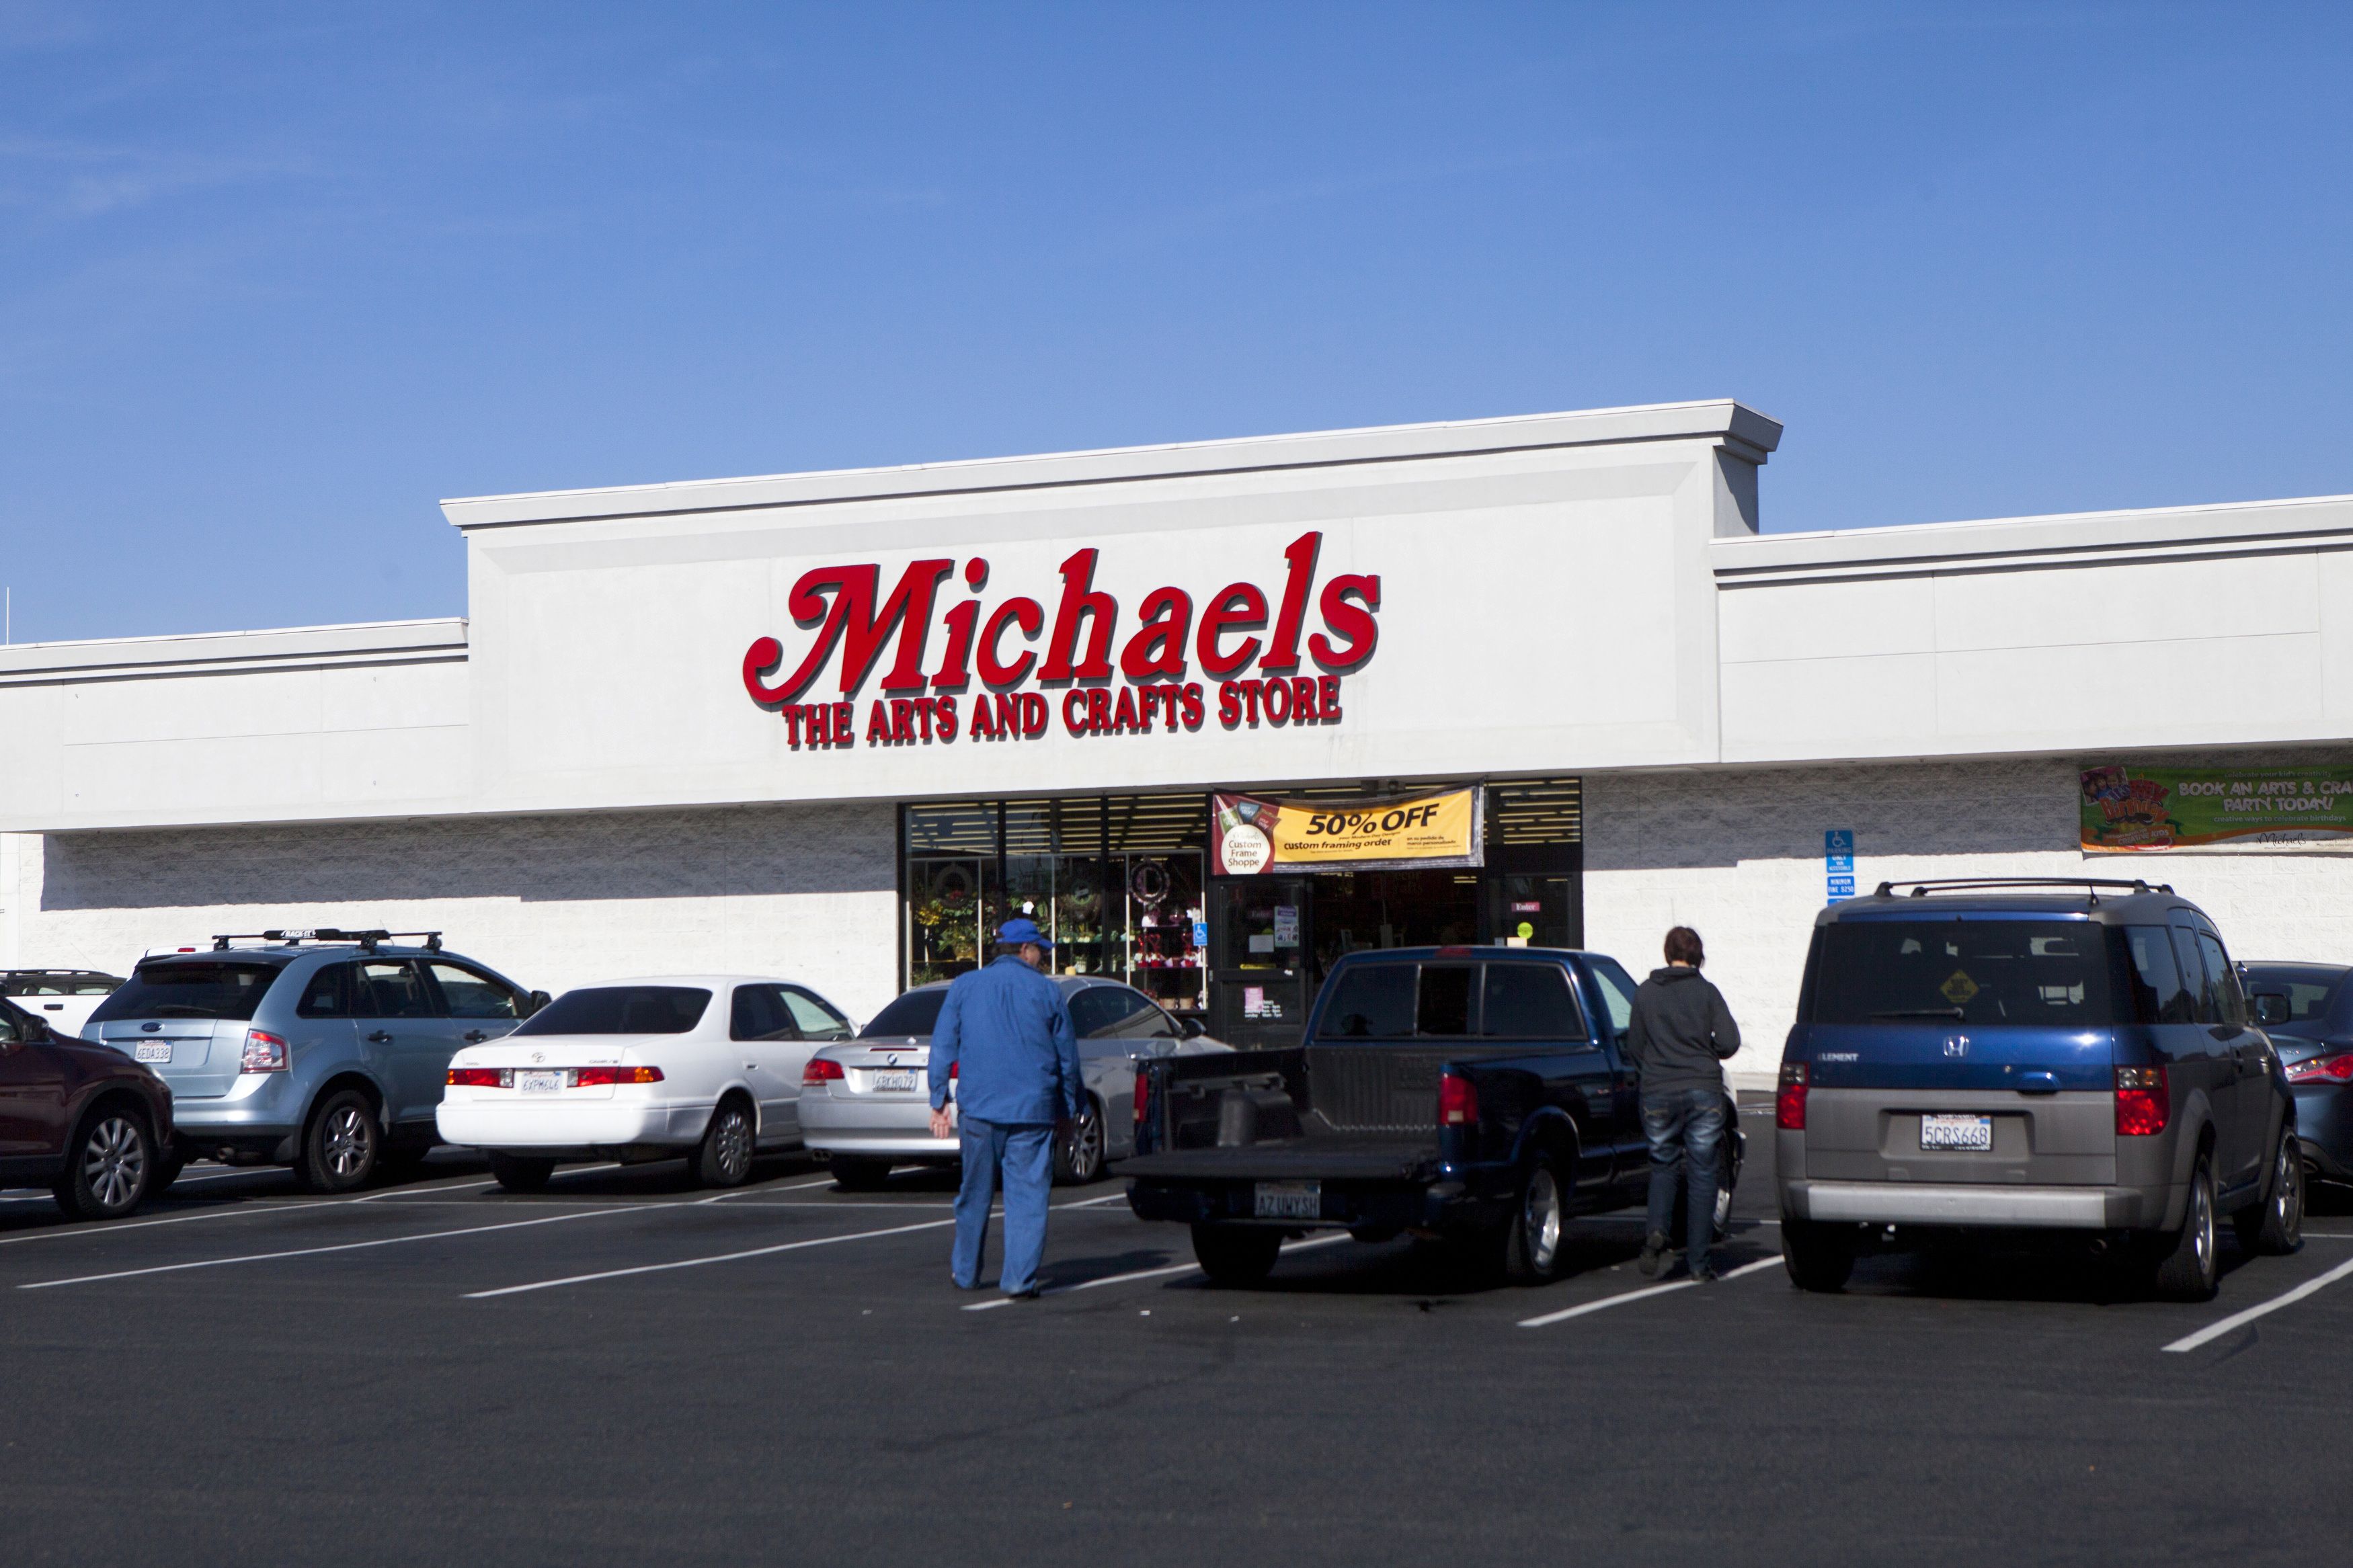 Michaels Craft Store to open in Aiken next year, Aiken Area Business